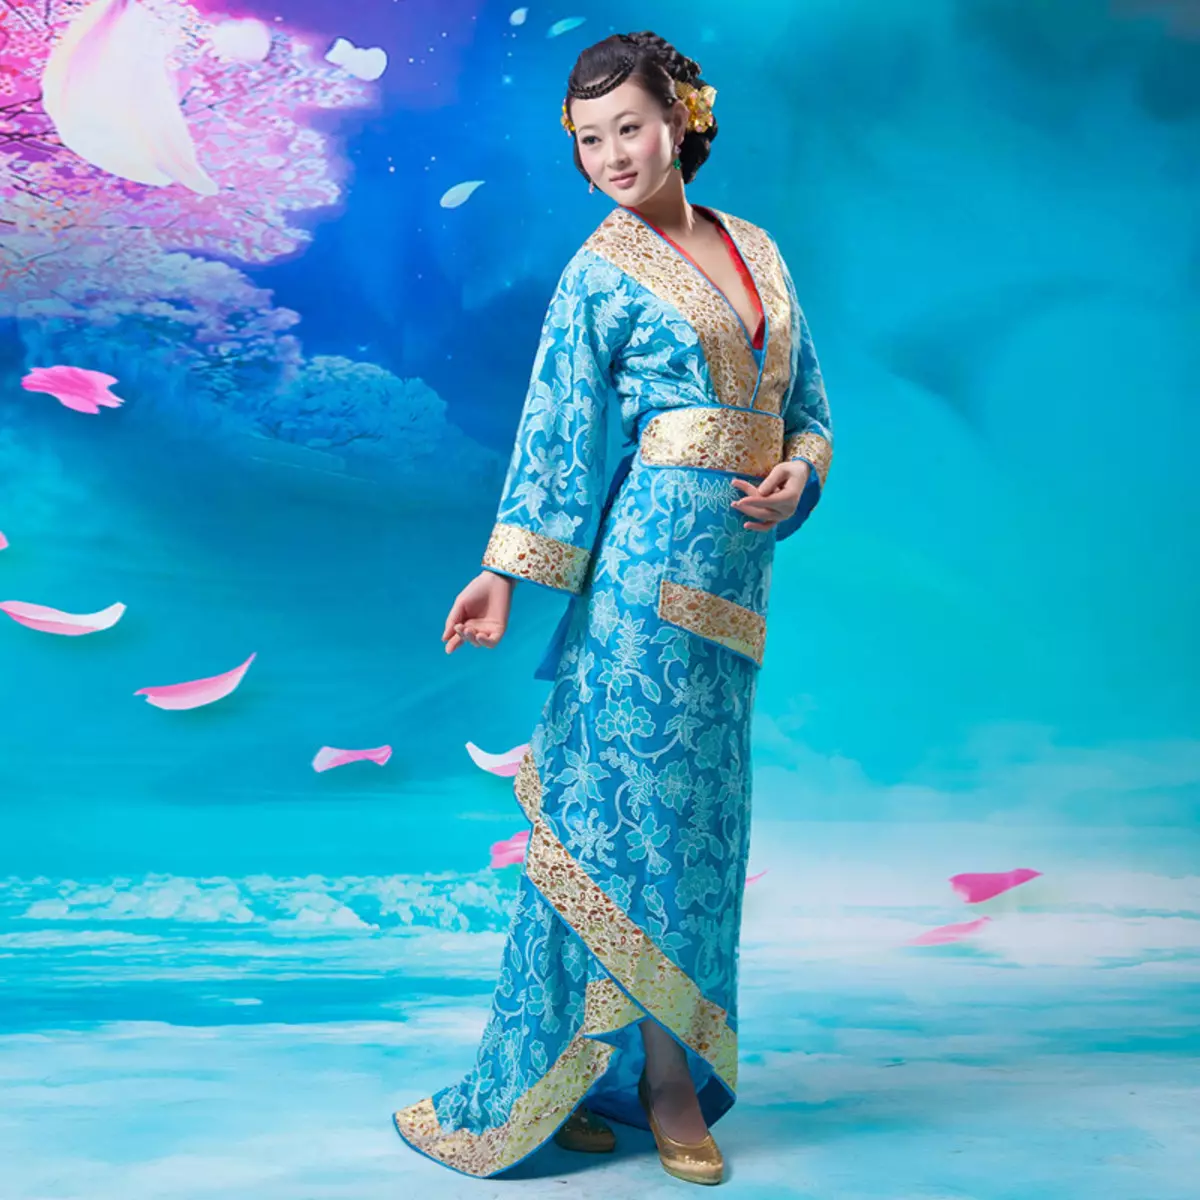 החליפה הלאומית הסינית (73 תמונות): תלבושת נקבה מסורתית של עמי סין, חליפה לילדה 1377_10